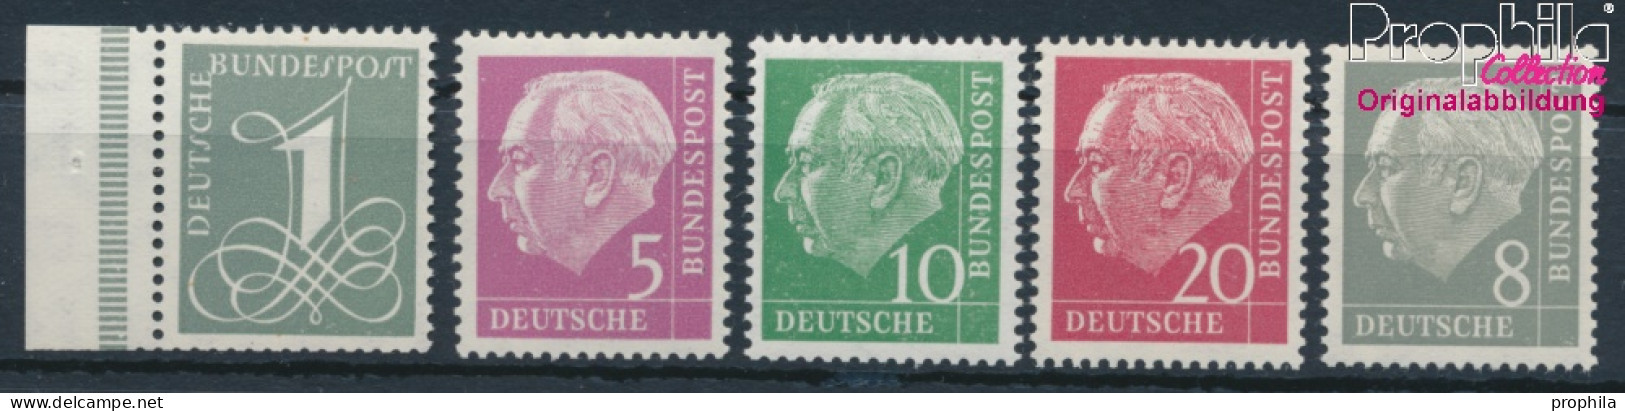 BRD 179Y,182Y,183Y,185Y,285Y (kompl.Ausg.) Liegendes Wasserzeichen Postfrisch 1960 Heuss I (10347827 - Neufs